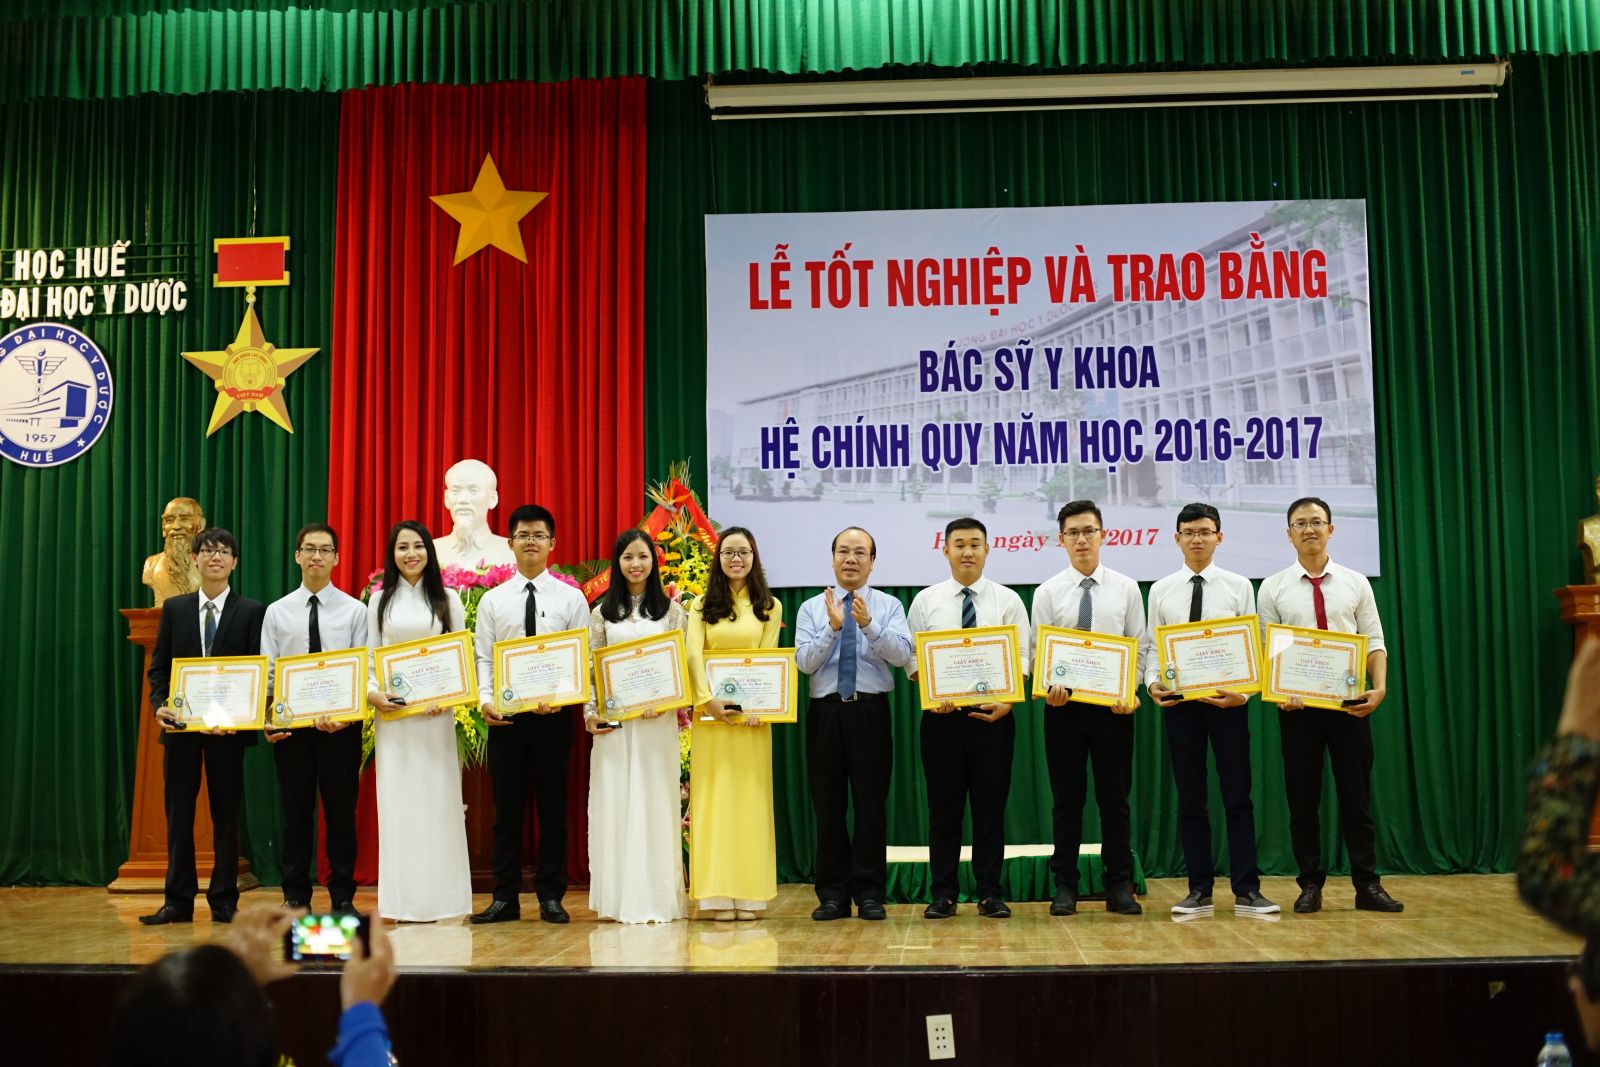 GS. Võ Tam, Phó Hiệu trưởng trao tặng Giấy khen cho những sinh viên đạt kết quả học tập xuất sắc/giỏi, rèn luyện xuất sắc/tốt và tích cực tham gia các công tác của Nhà trường trong toàn khóa học.